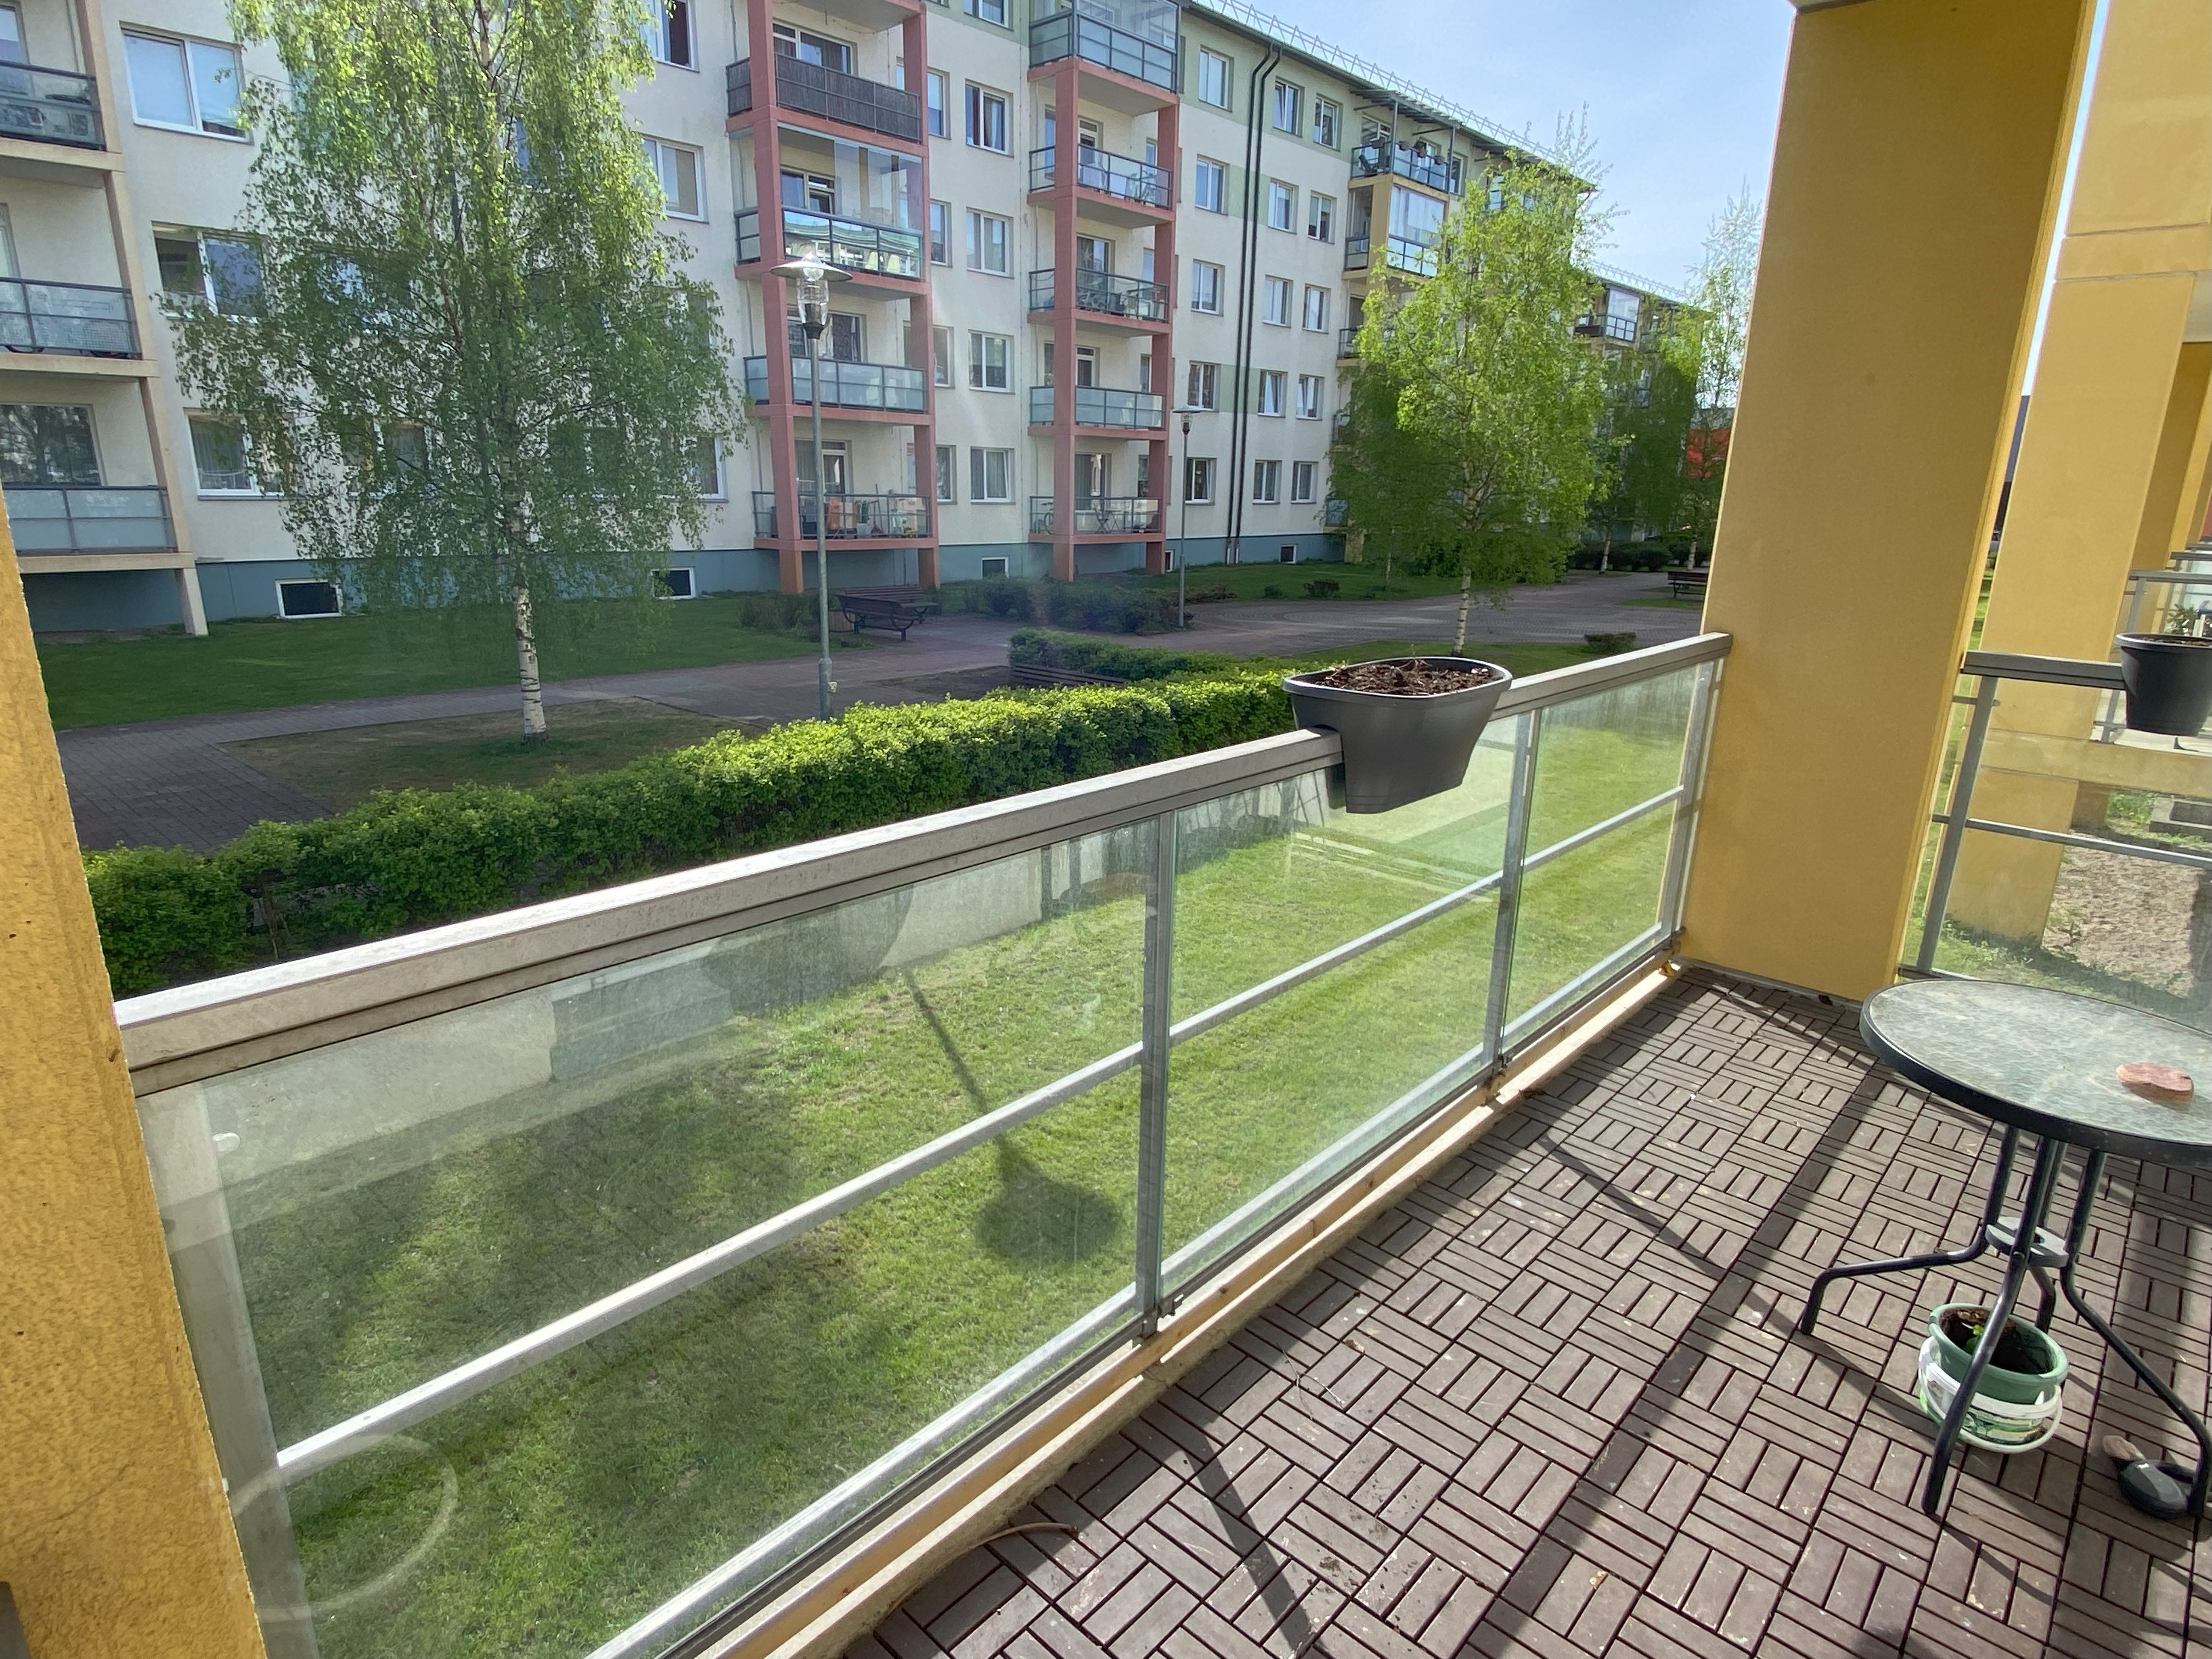 Apartment for sale, Biķernieku street 160 k1 - Image 1